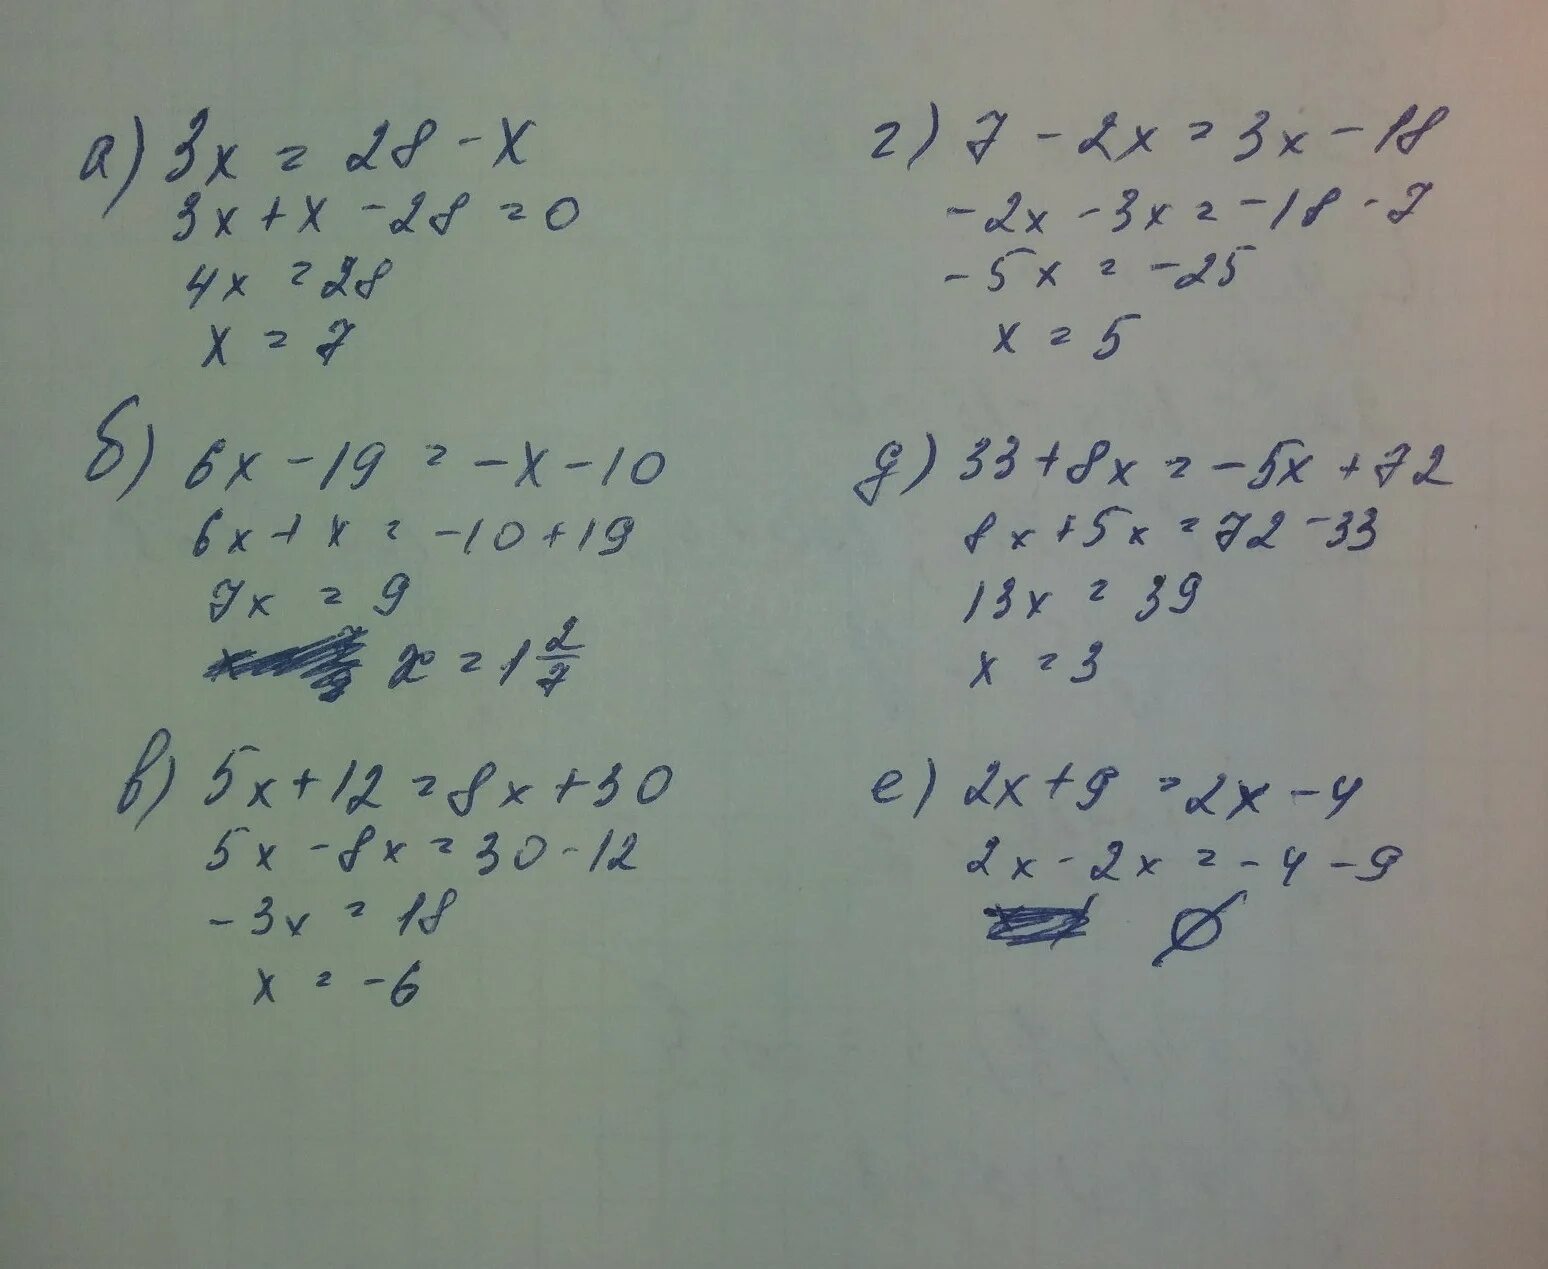 4x 7 3 x 1 решение. 3x=28-x. Найдите корень уравнения (-4x+5)(-7+x)=0. Найдите корни уравнений 3x+1/x-2. Найди корни уравнения -6,6 (x-8 9)(x-28).